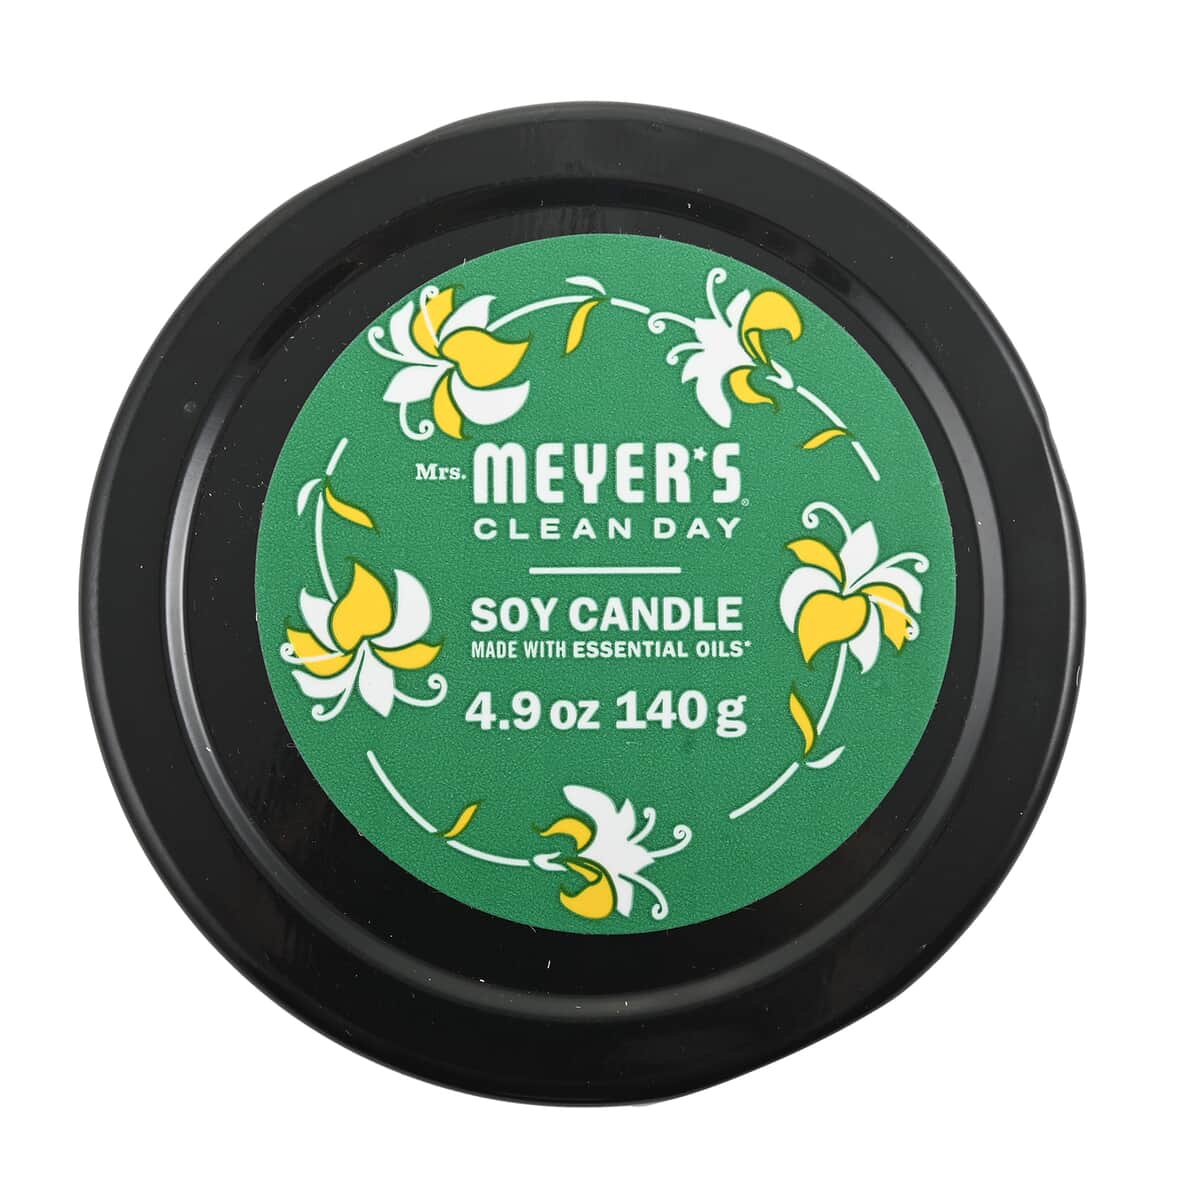 Mrs. Meyer's Clean Day Jar Candle - Honeysuckle 4.9 oz image number 3